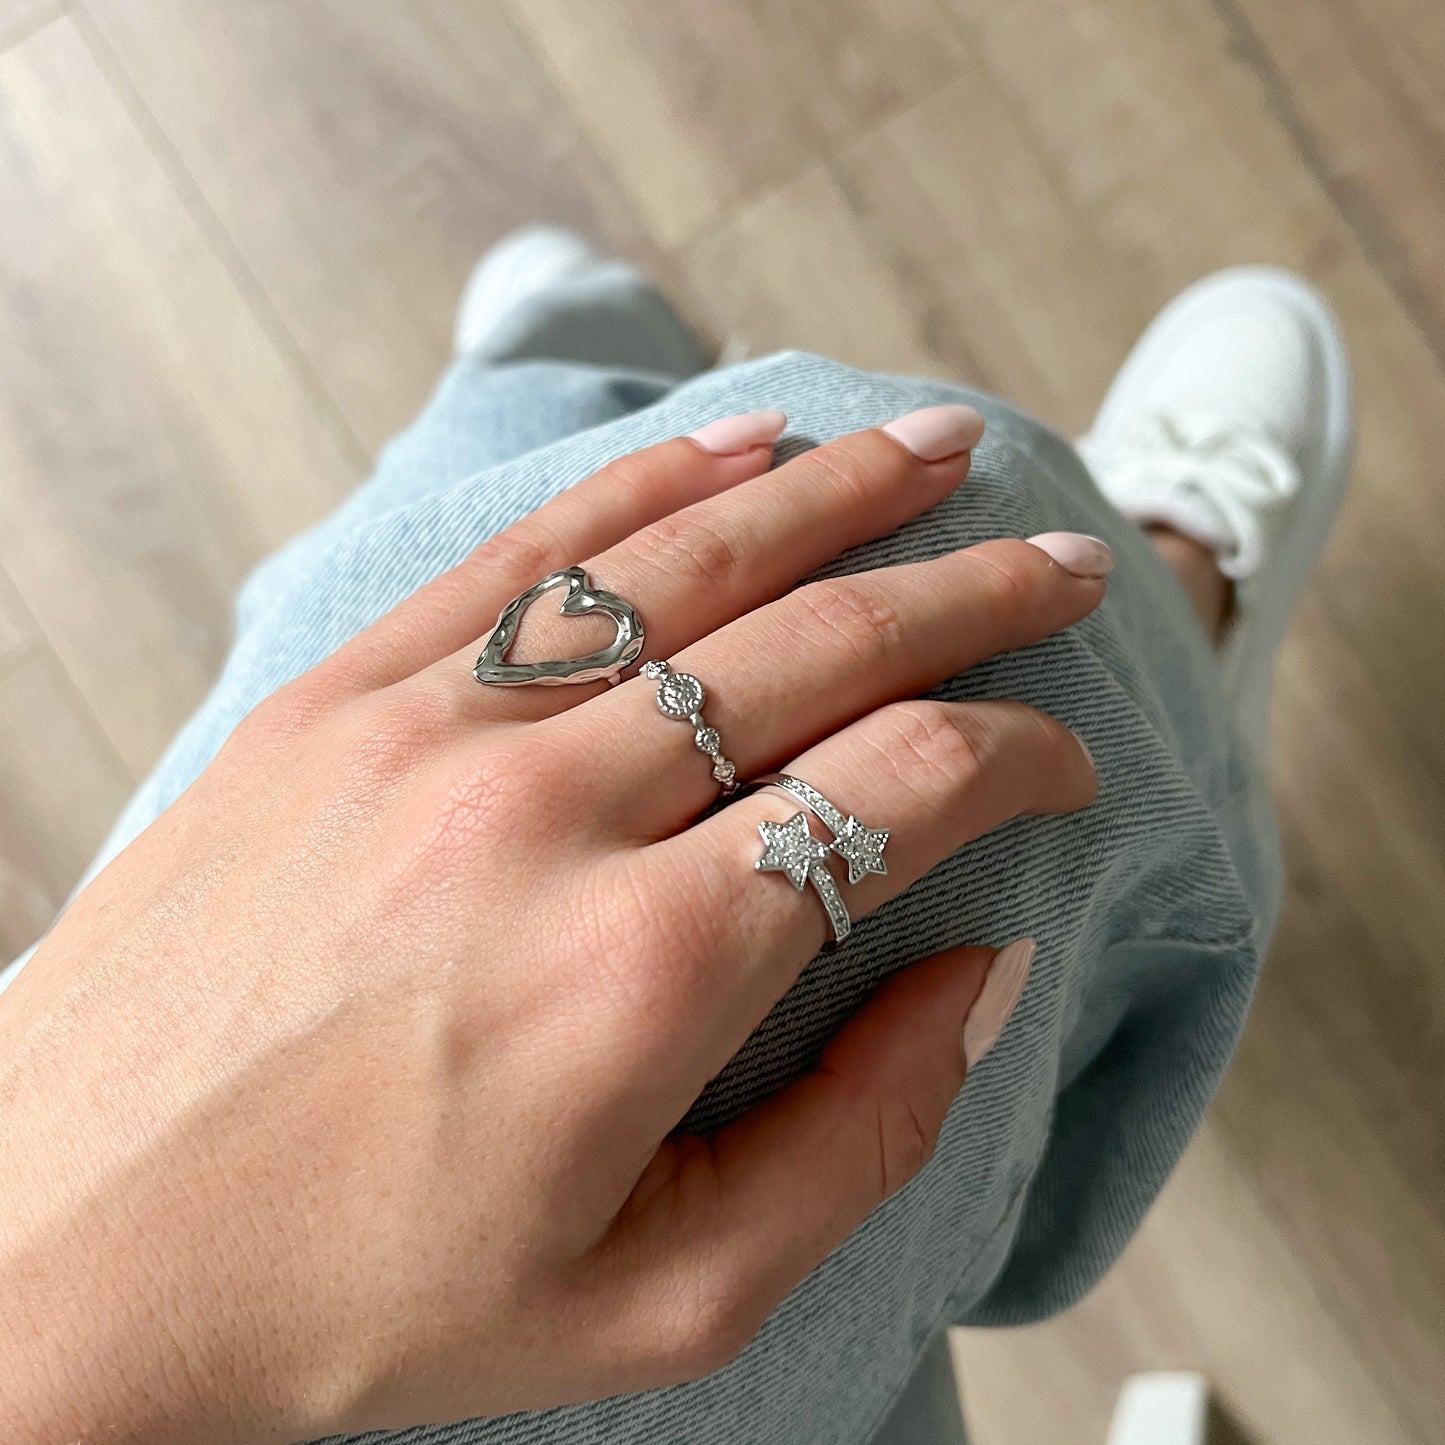 heartbreaker ring - zilver